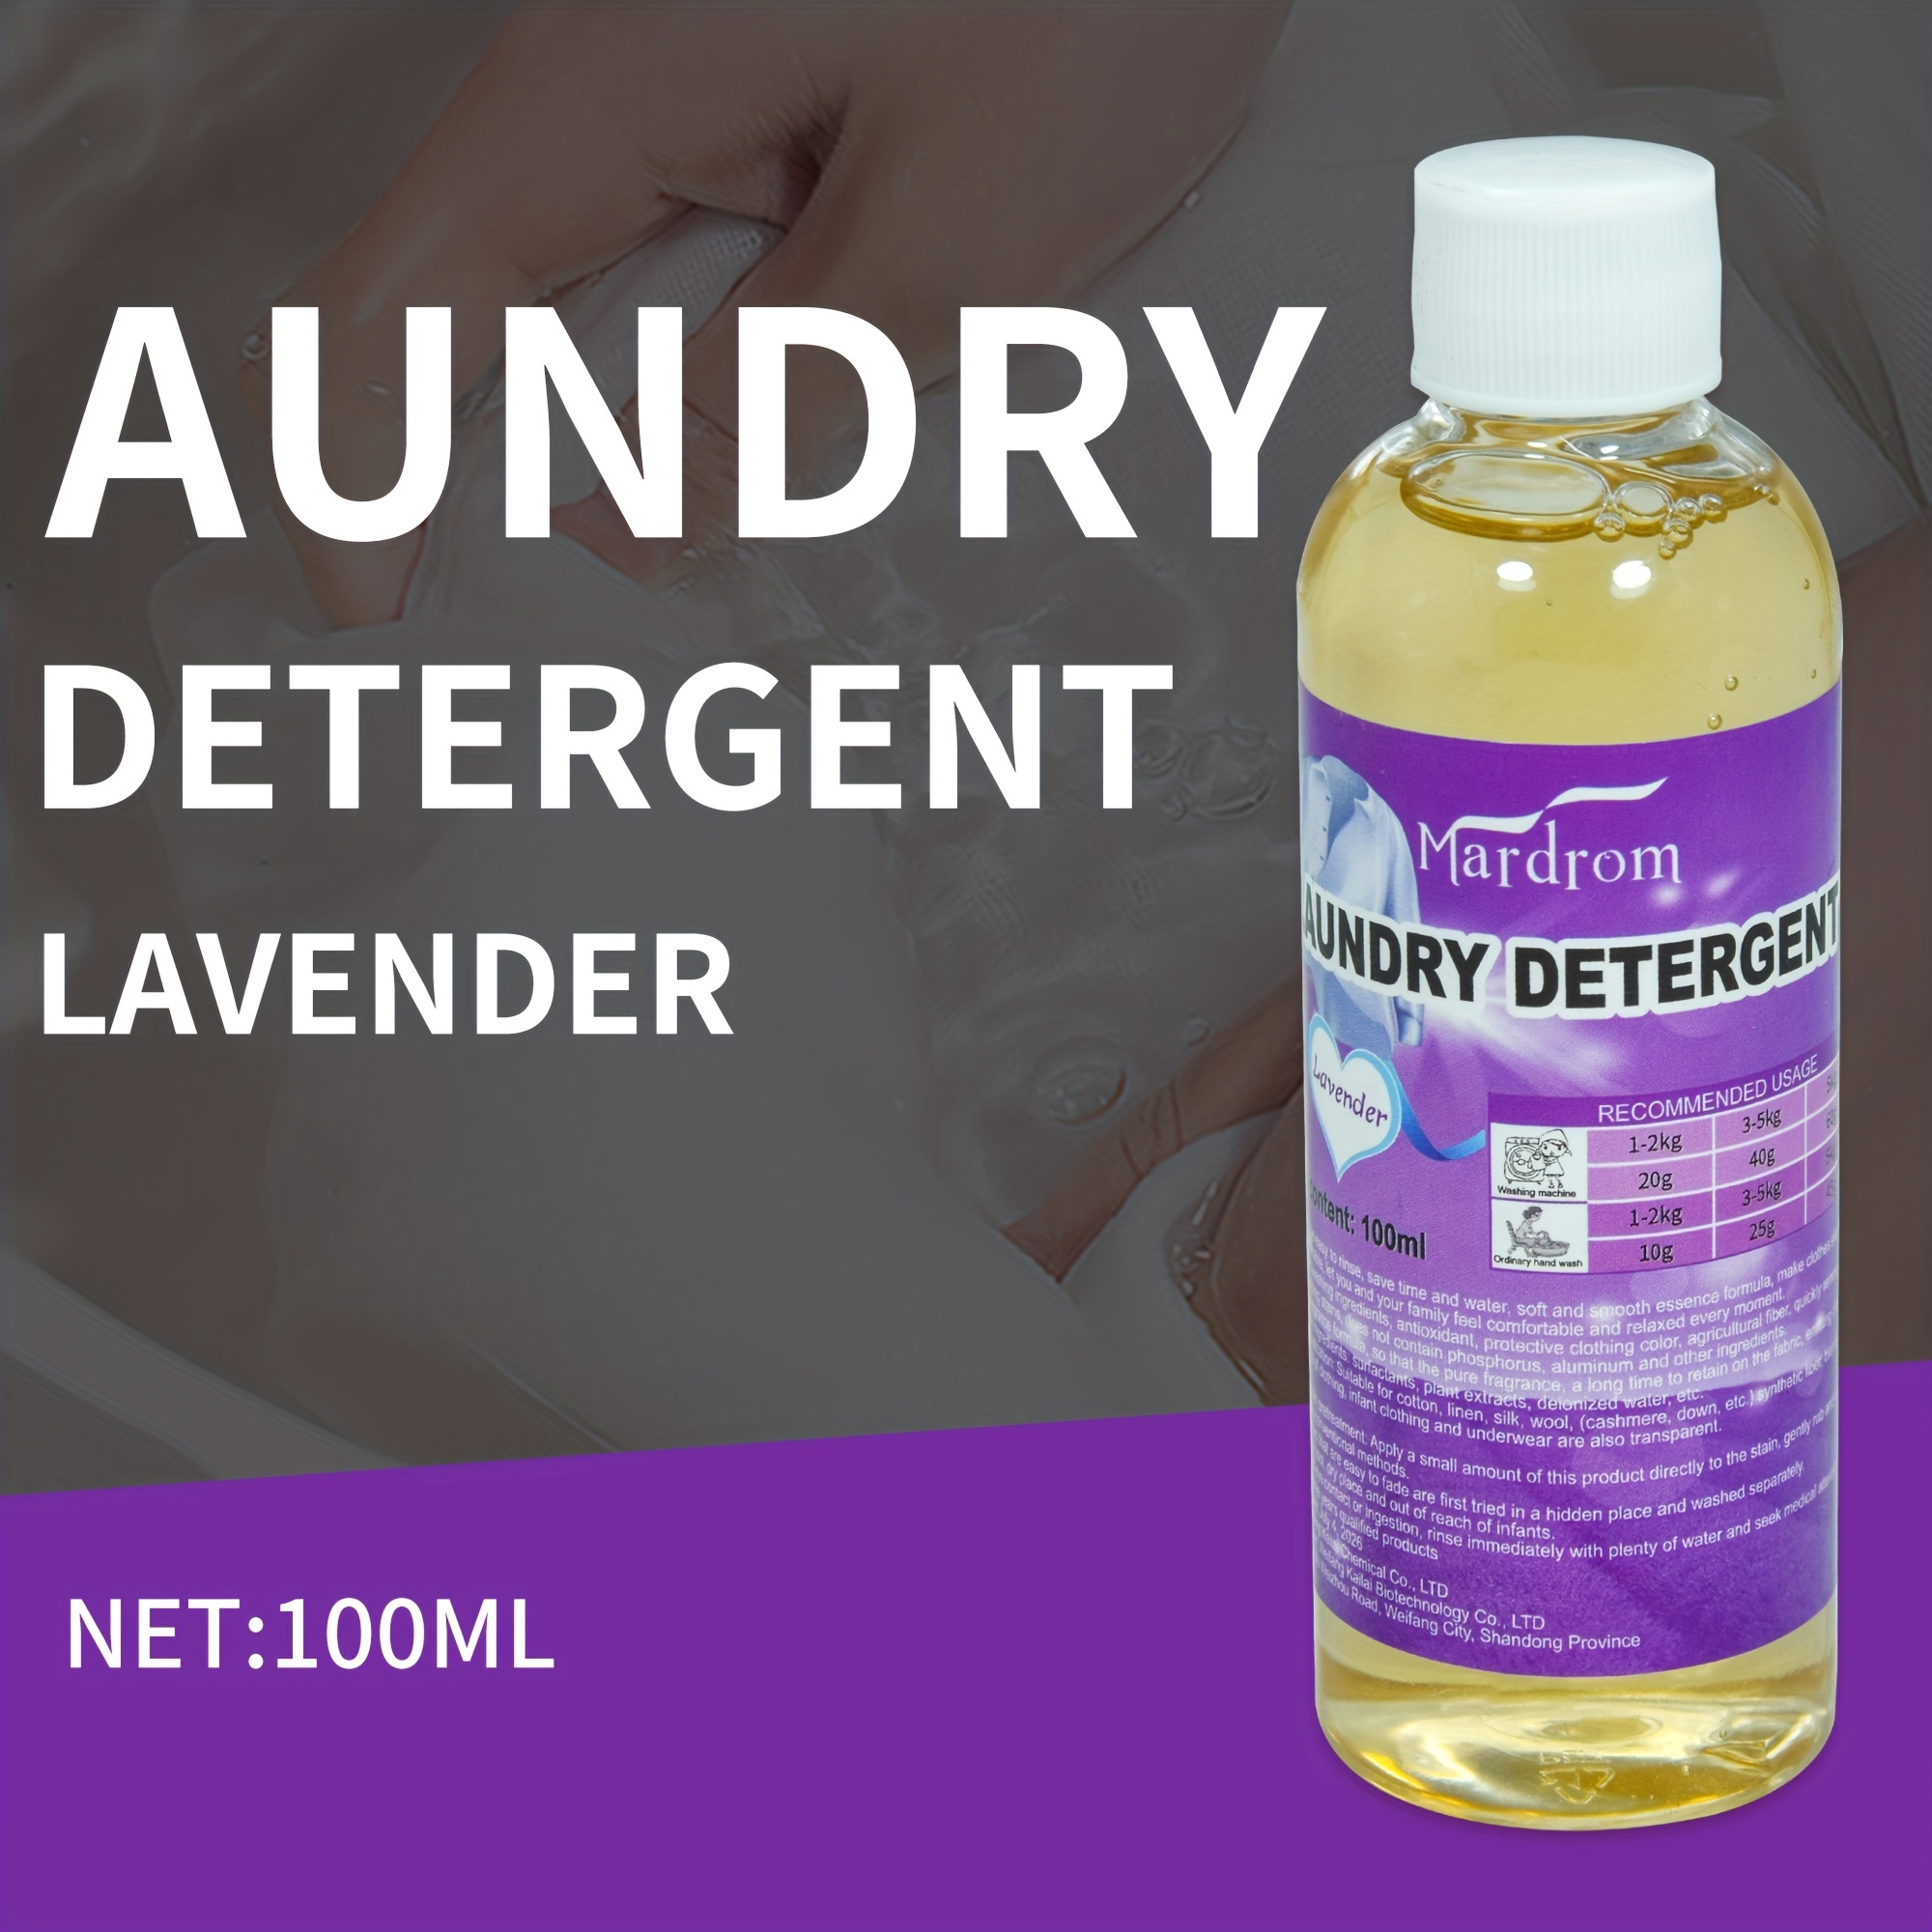 Laundry Detergent & Supplies